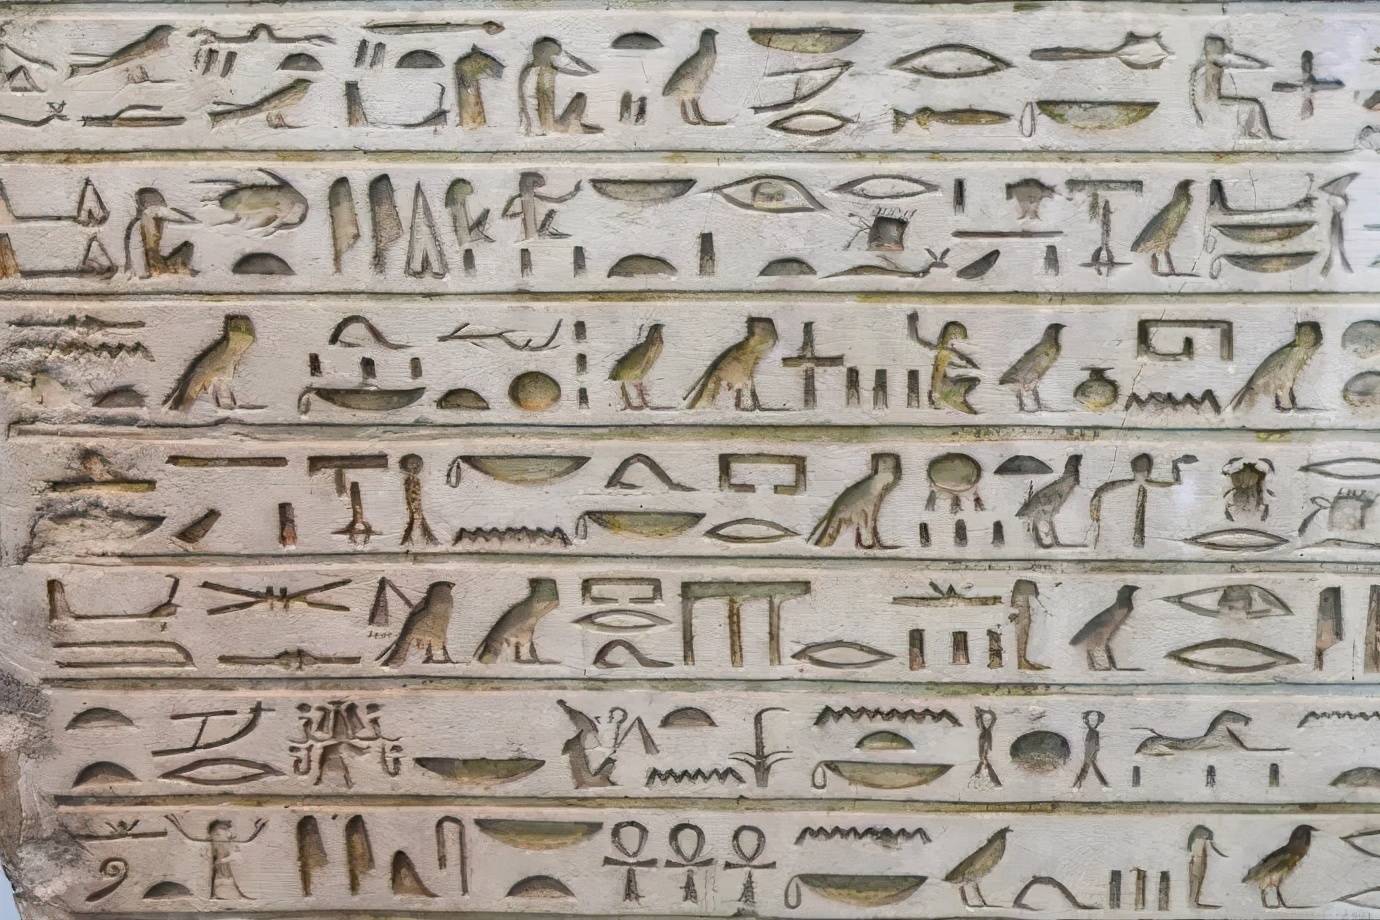 象形文字是原始人根据自己所看到的事物的直观印象画出来的,所以这种